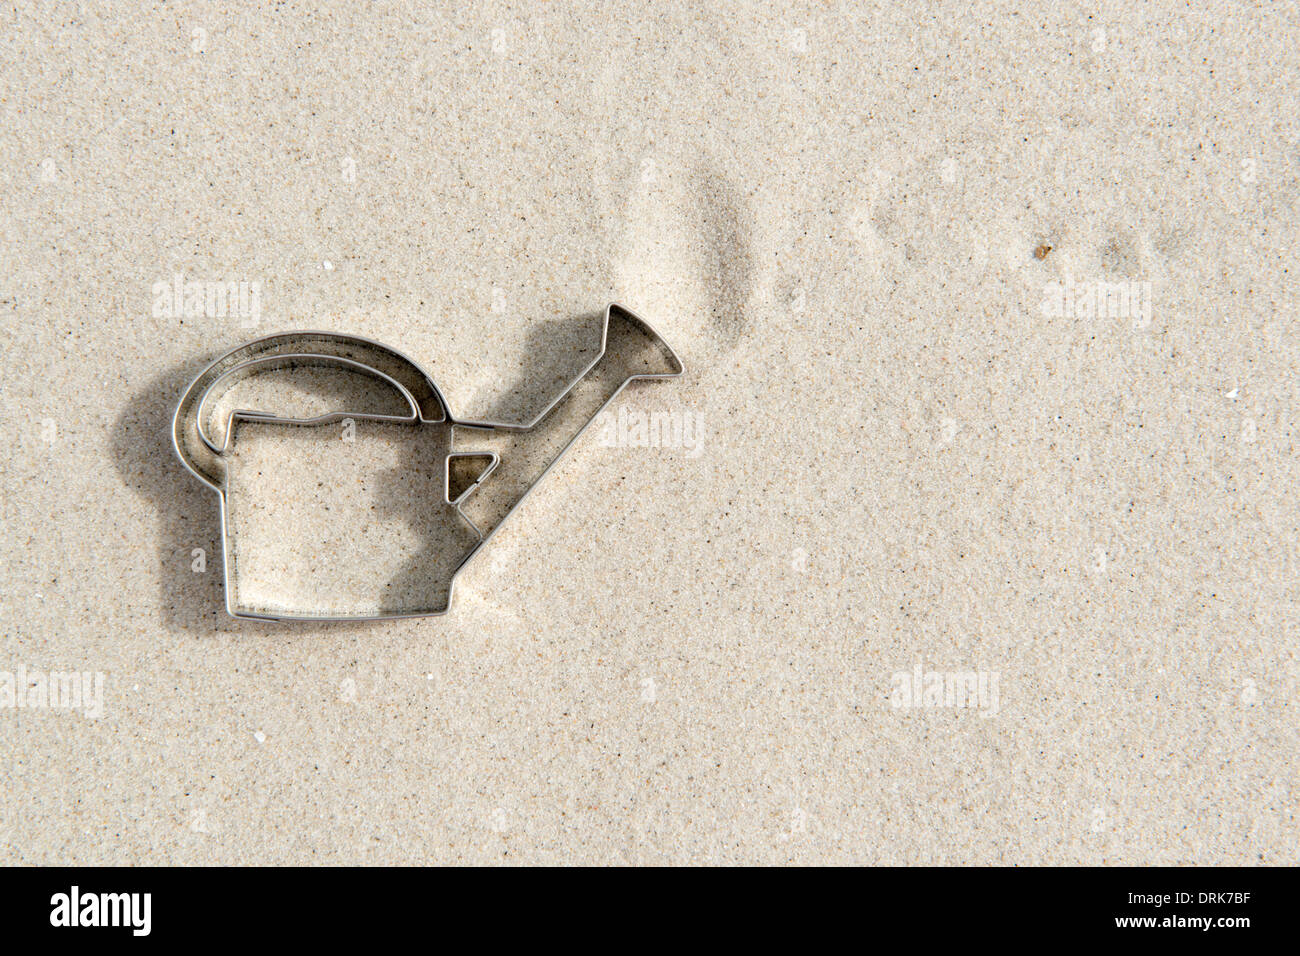 Emporte-pièce en forme d'arrosoir sur le sable Banque D'Images